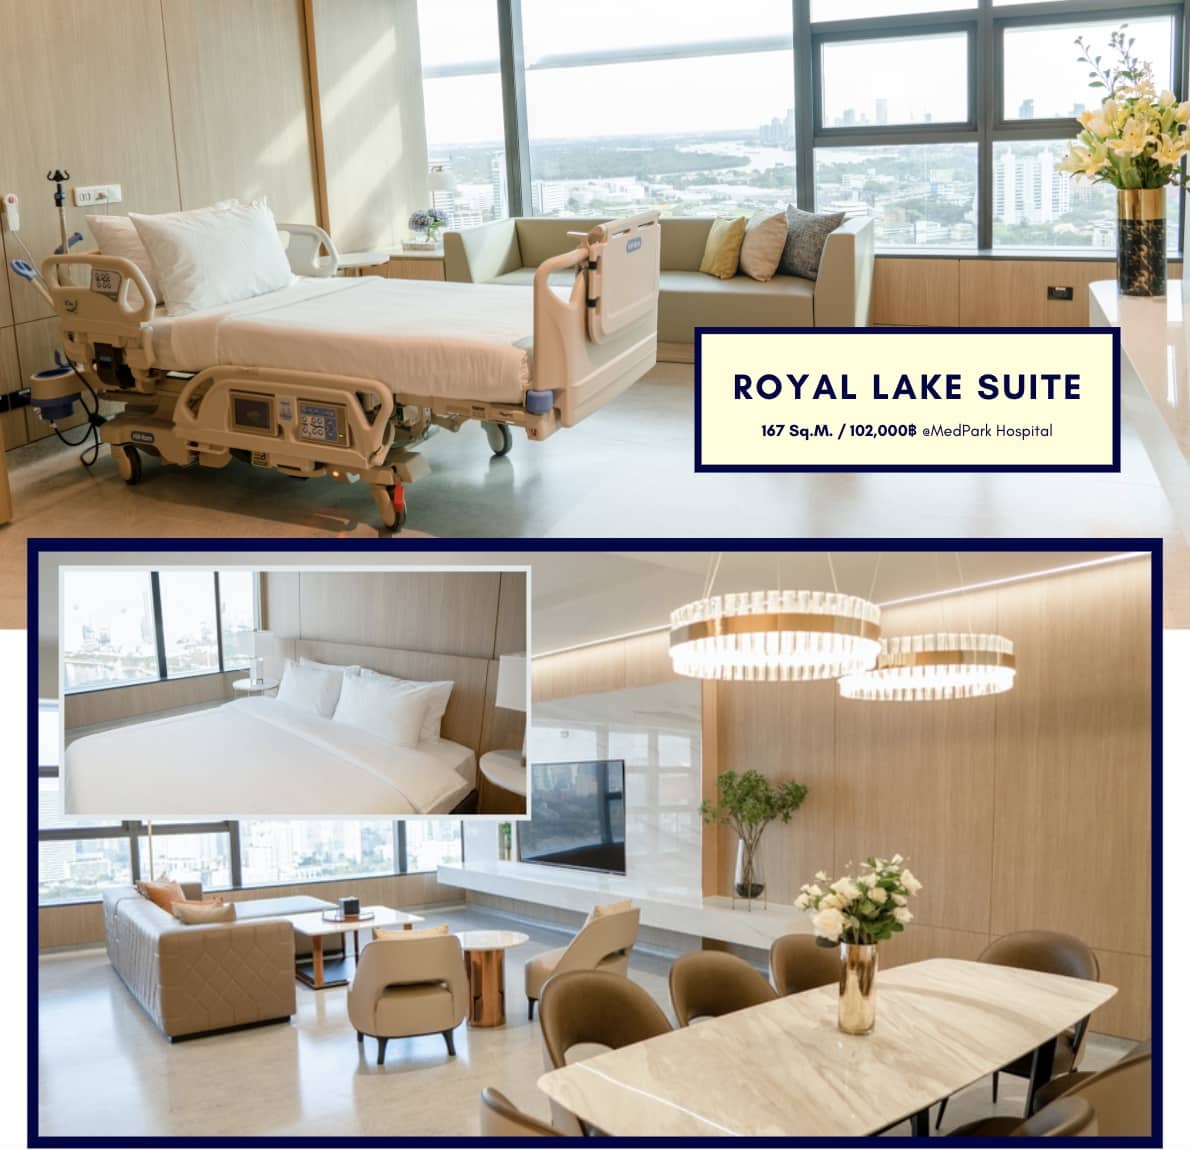 ห้อง Royal Lake Suite โรงพยาบาลเมดพาร์ค